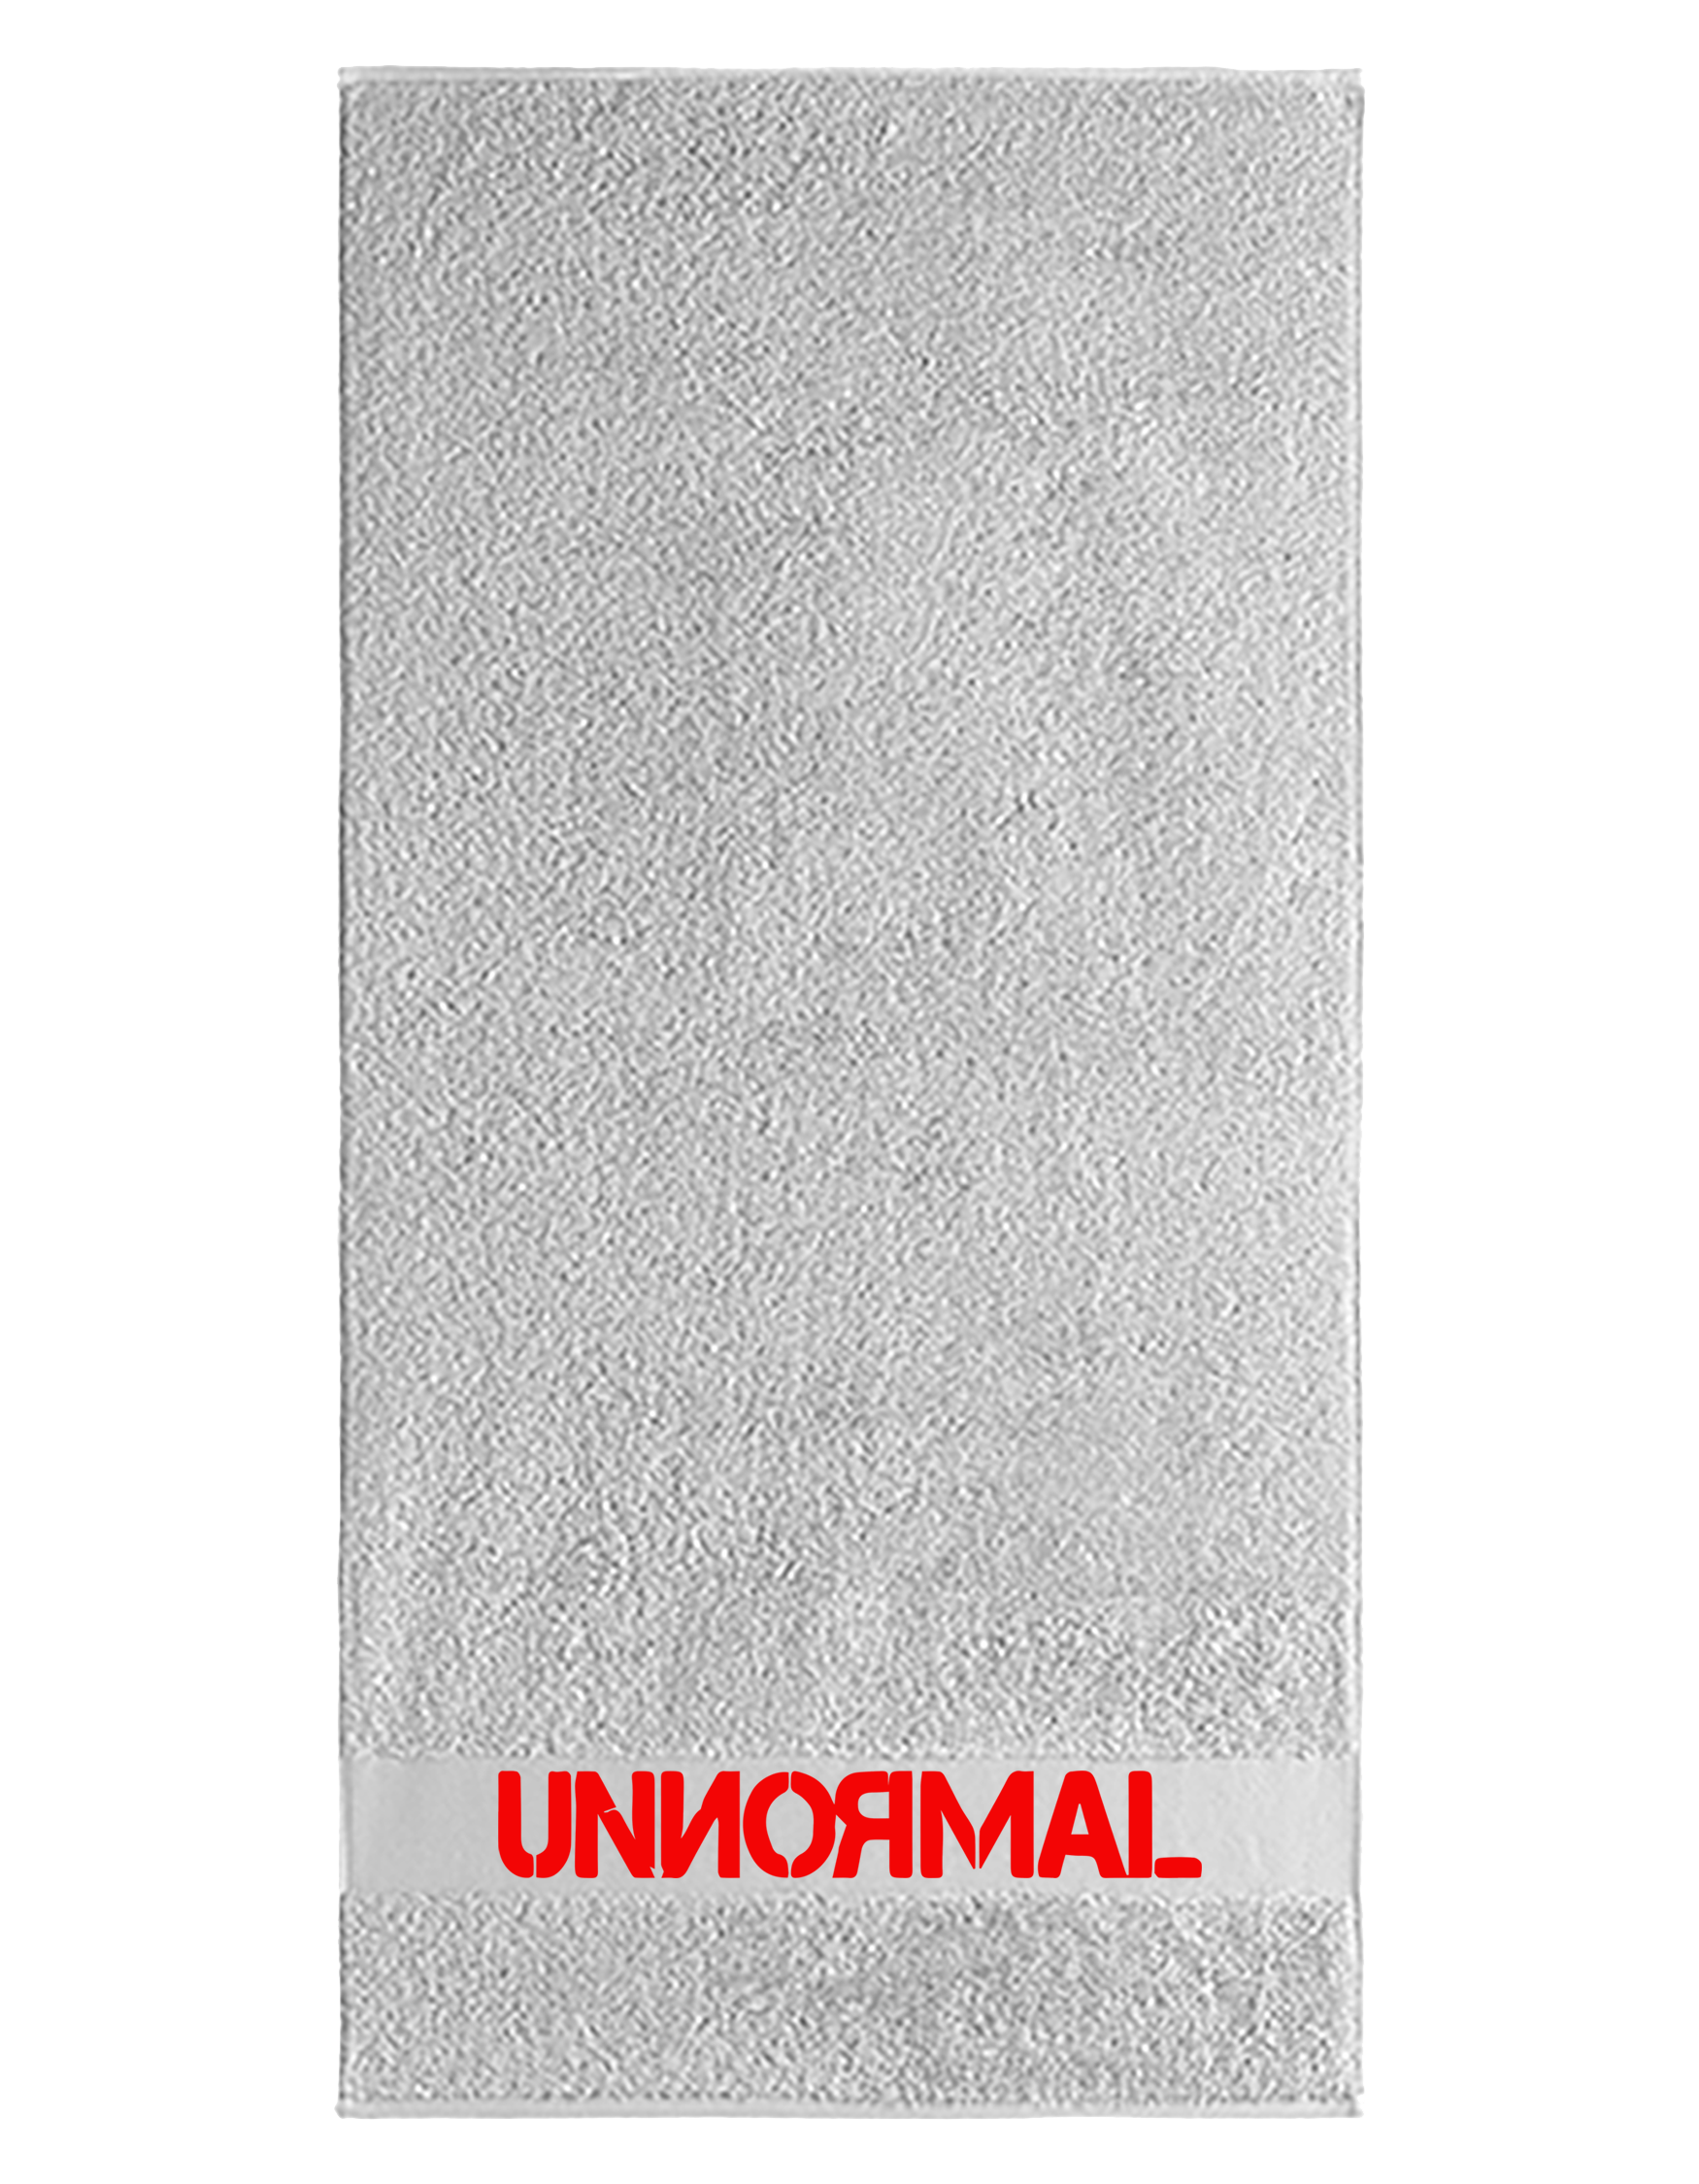 UNNORMAL - Logo - Handtuch [weiß]